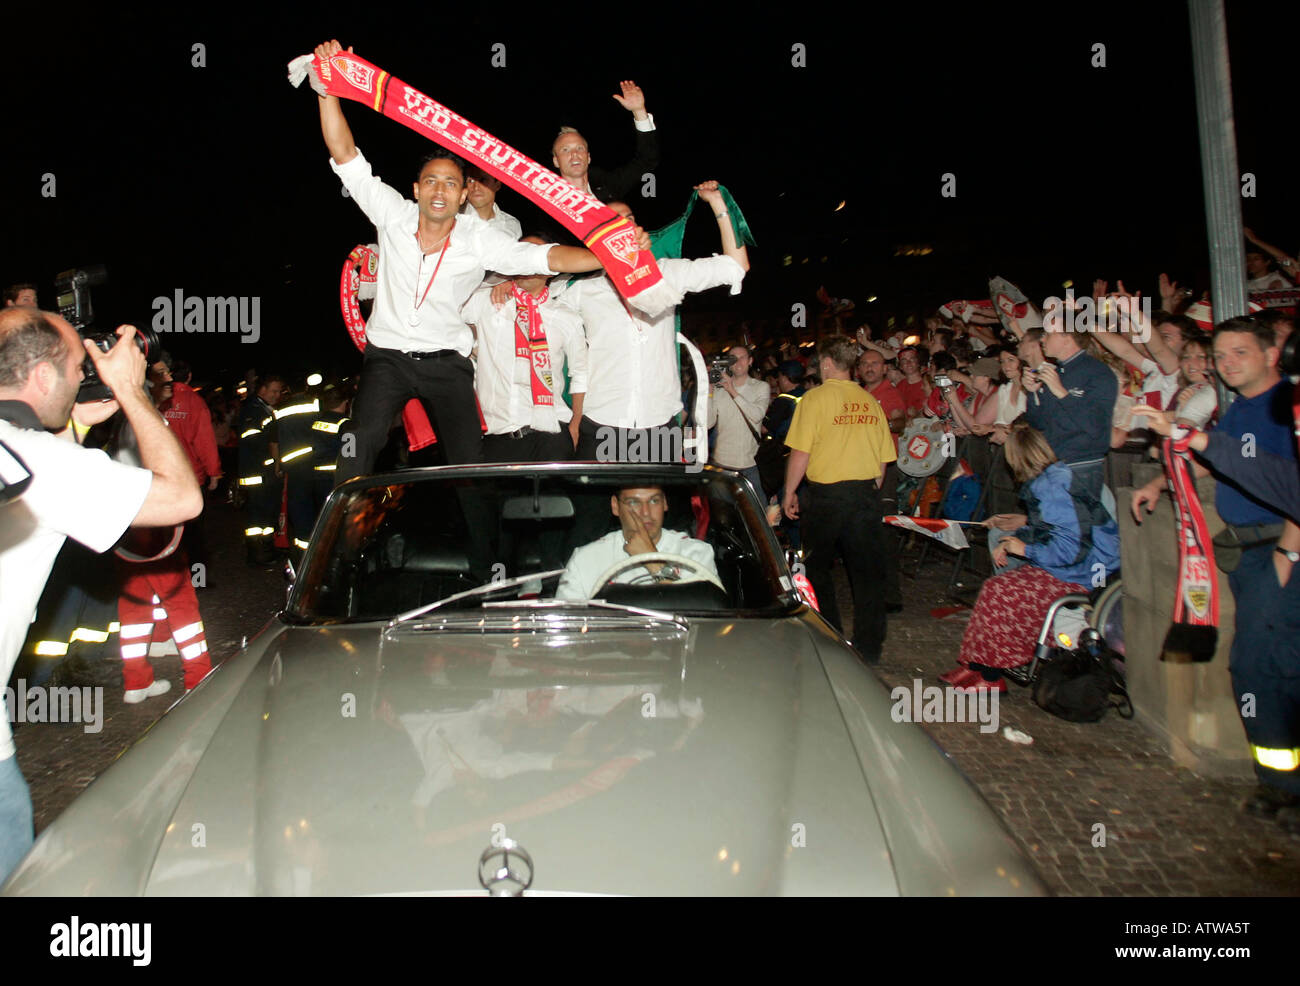 Les partisans de l'équipe de football allemande célébrant le VfB Stuttgart en finale de la Coupe allemande Banque D'Images